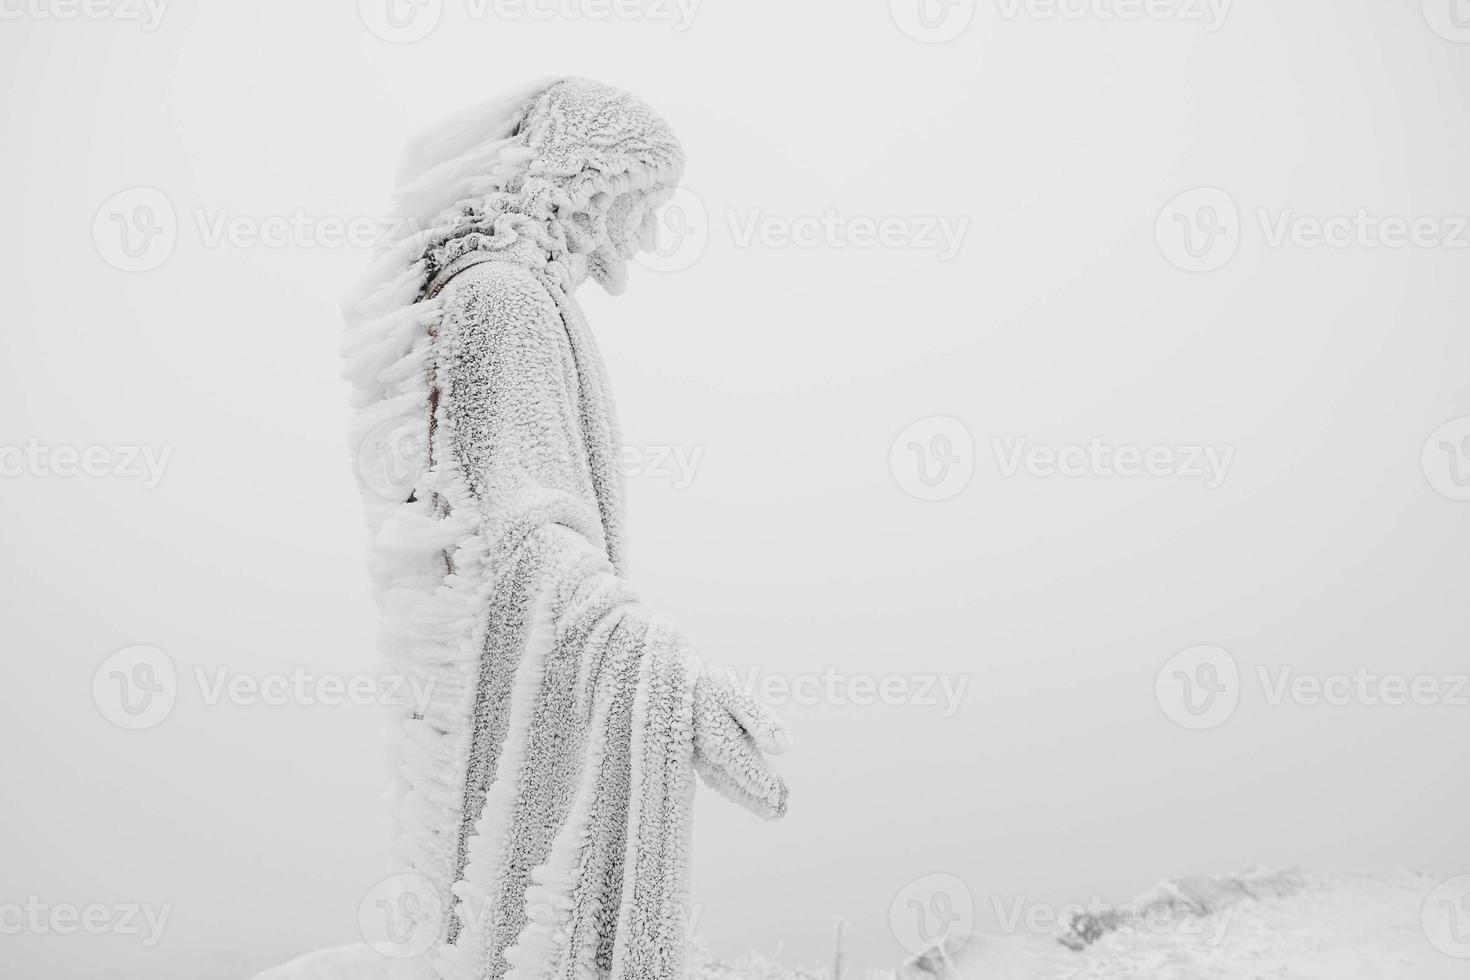 die statue von jesus ist auf dem berg mit schnee und eis bedeckt foto